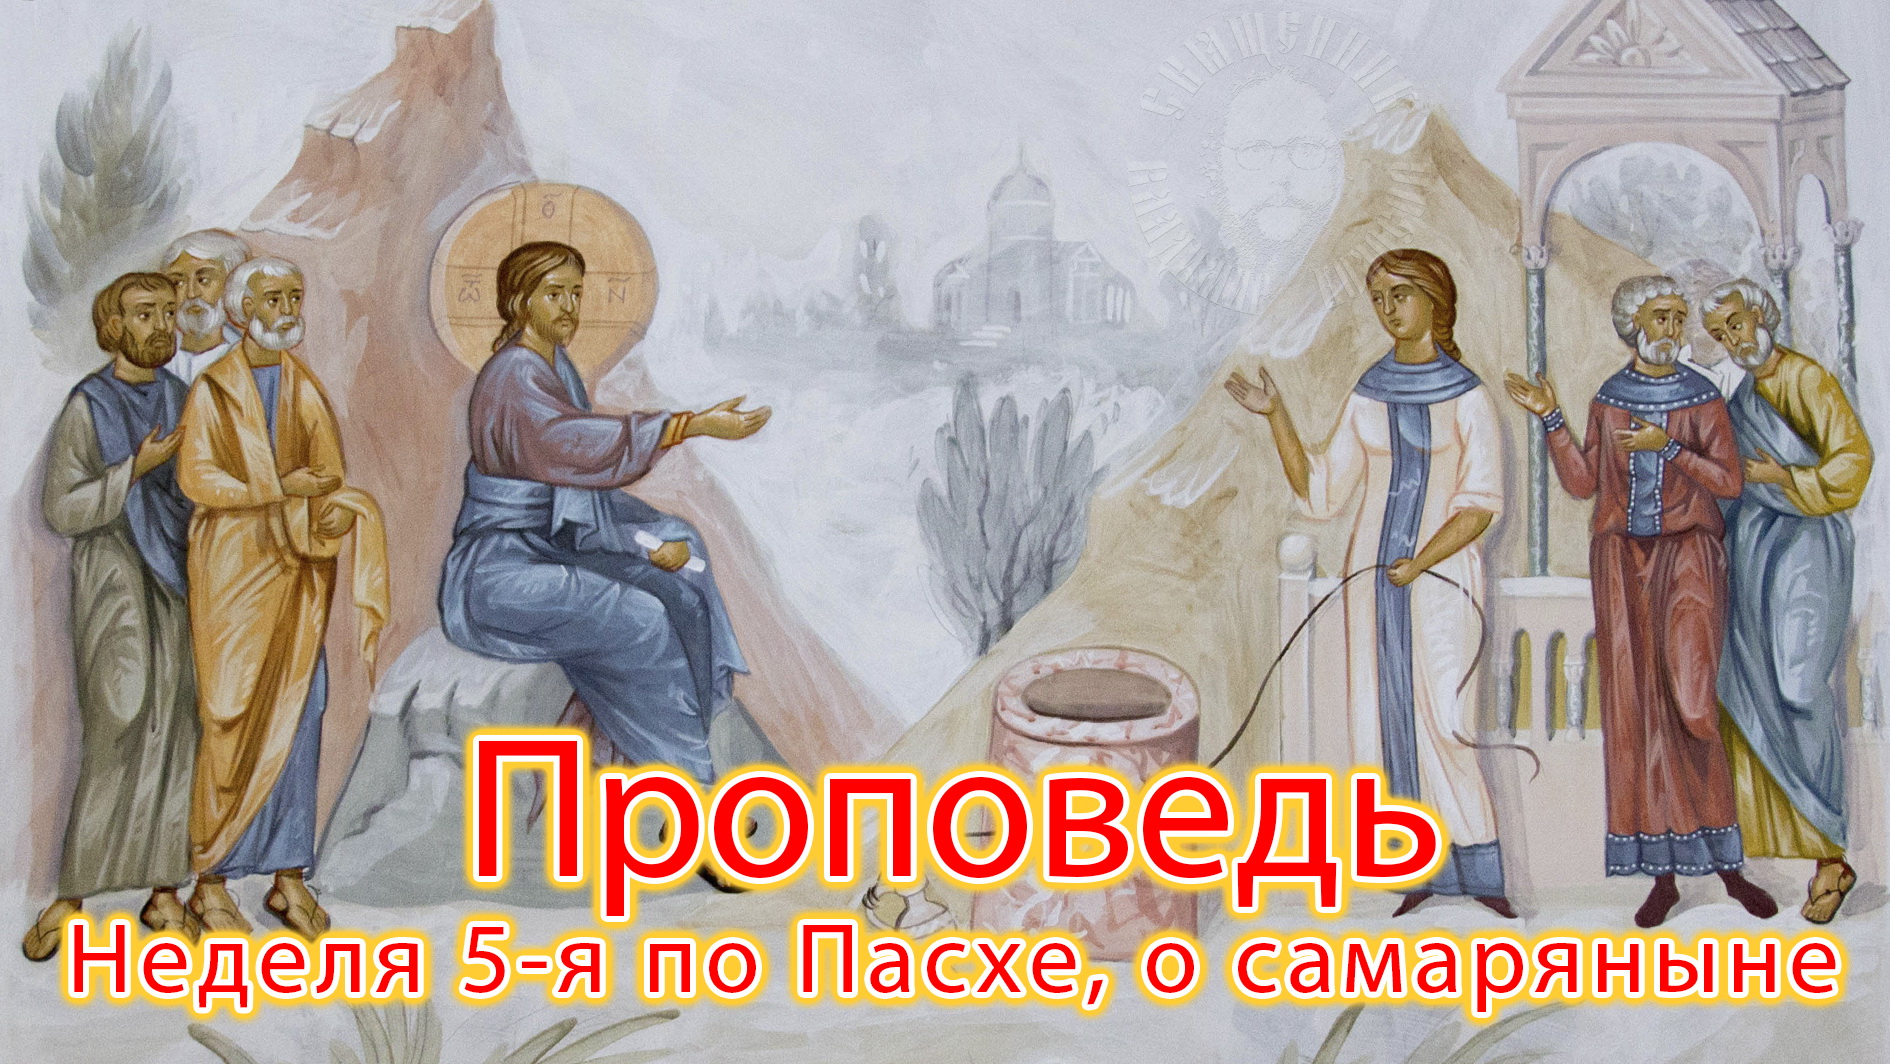 ПРОПОВЕДЬ. Неделя 5-я по Пасхе, о самаряныне, прот. Владимир Колосов, 2021.